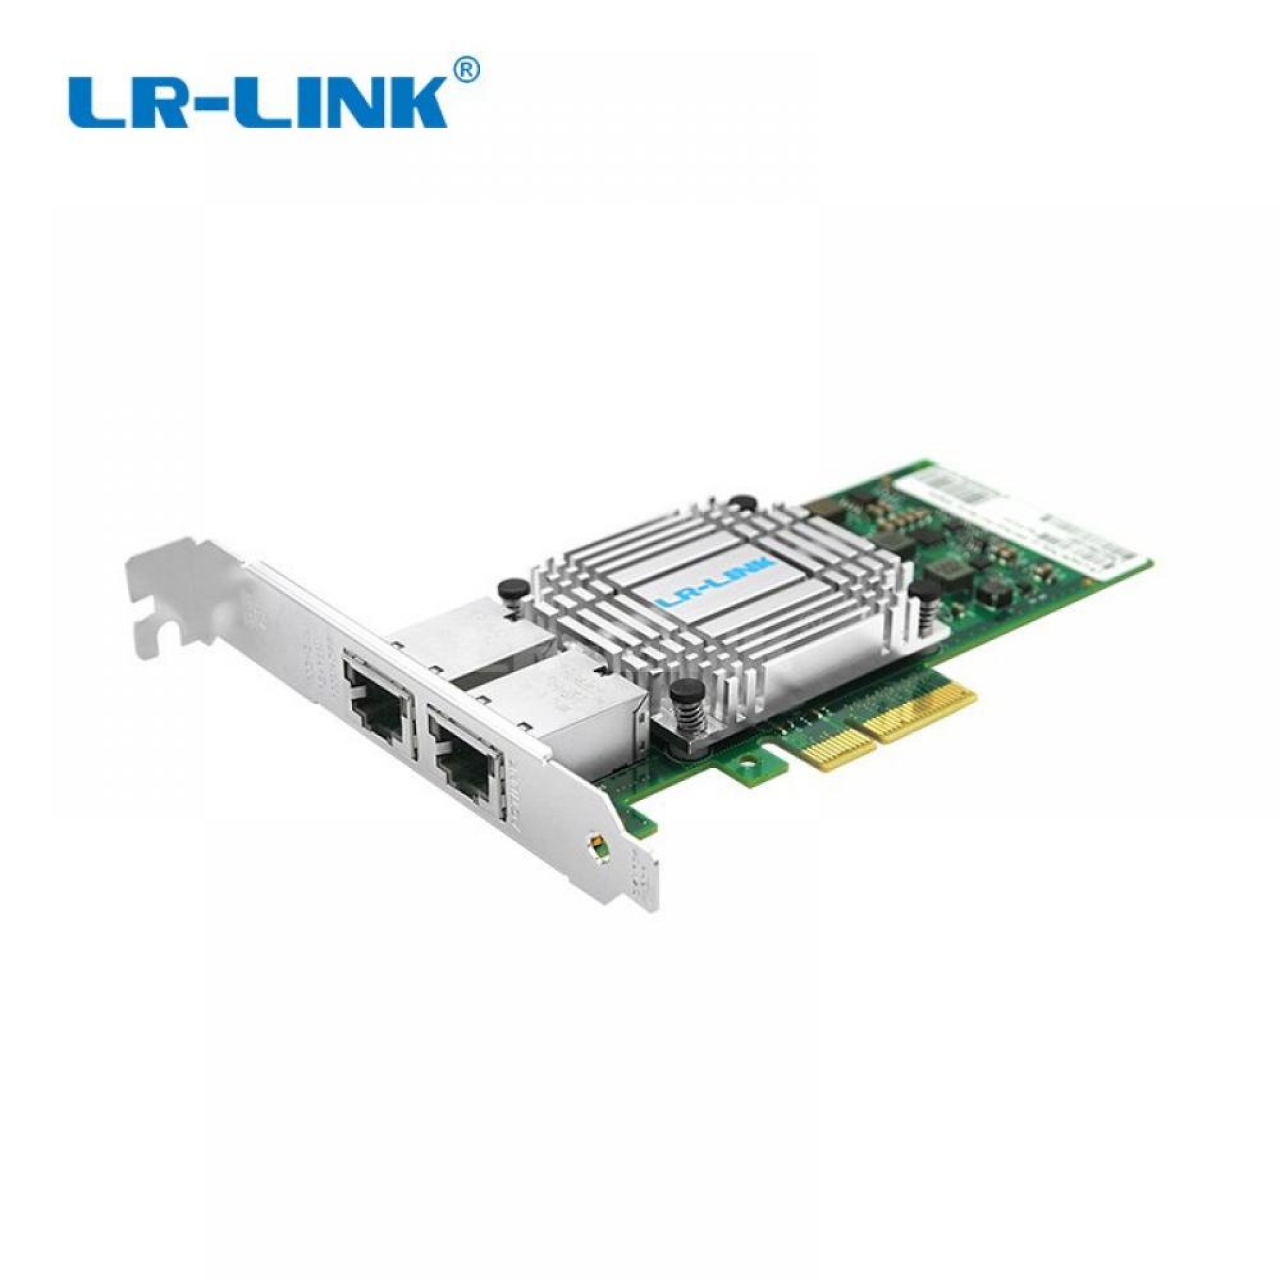 LREC9812BT PCIe v3.0 x4 10 Gigabit Dual Copper Port Ethernet Server Adapter (based on Intel X550)